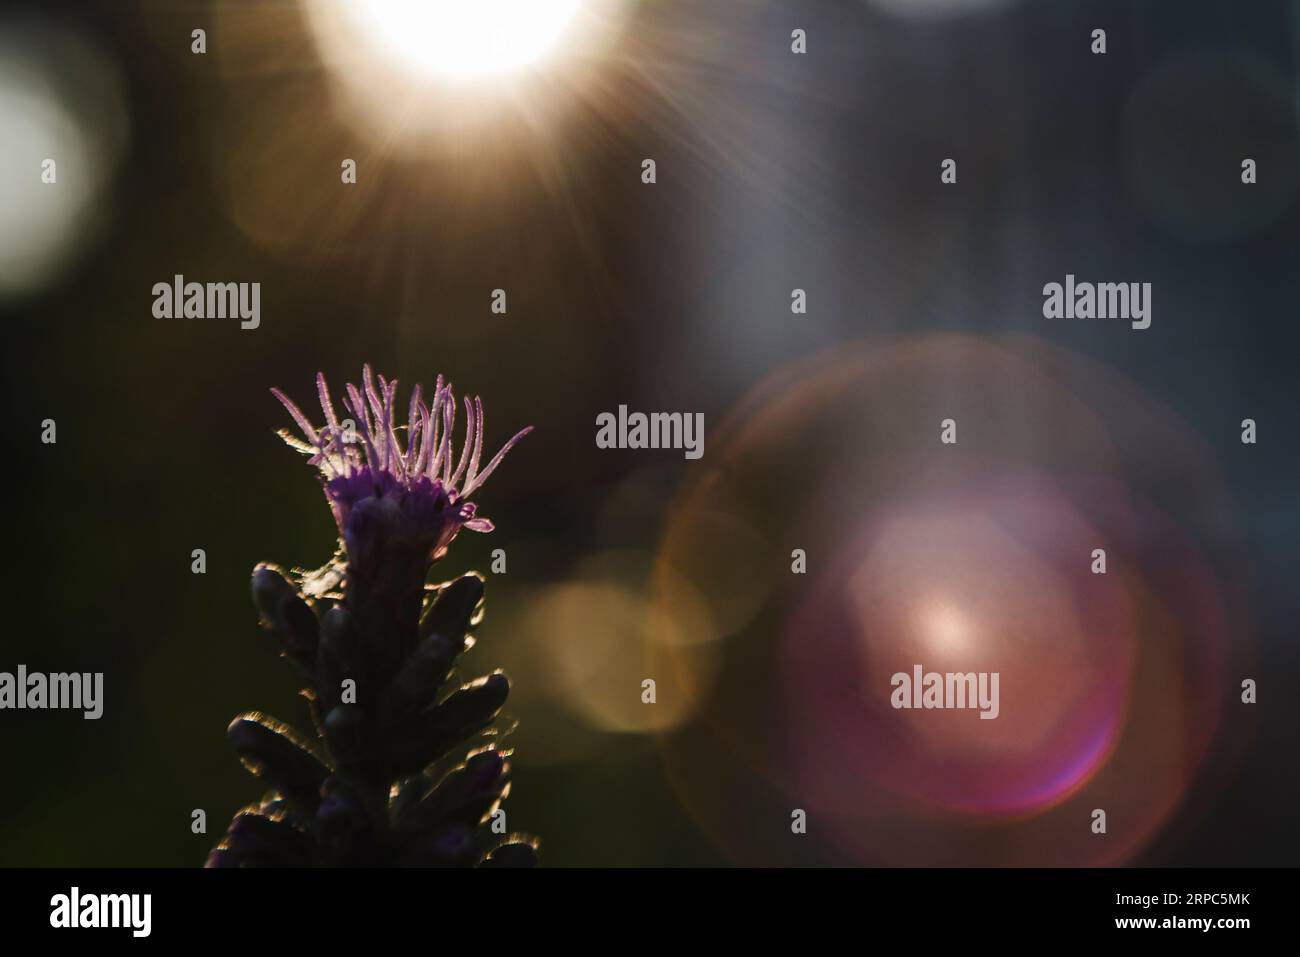 Macro plan de jolie lumière frappant le haut de la fleur violette Banque D'Images